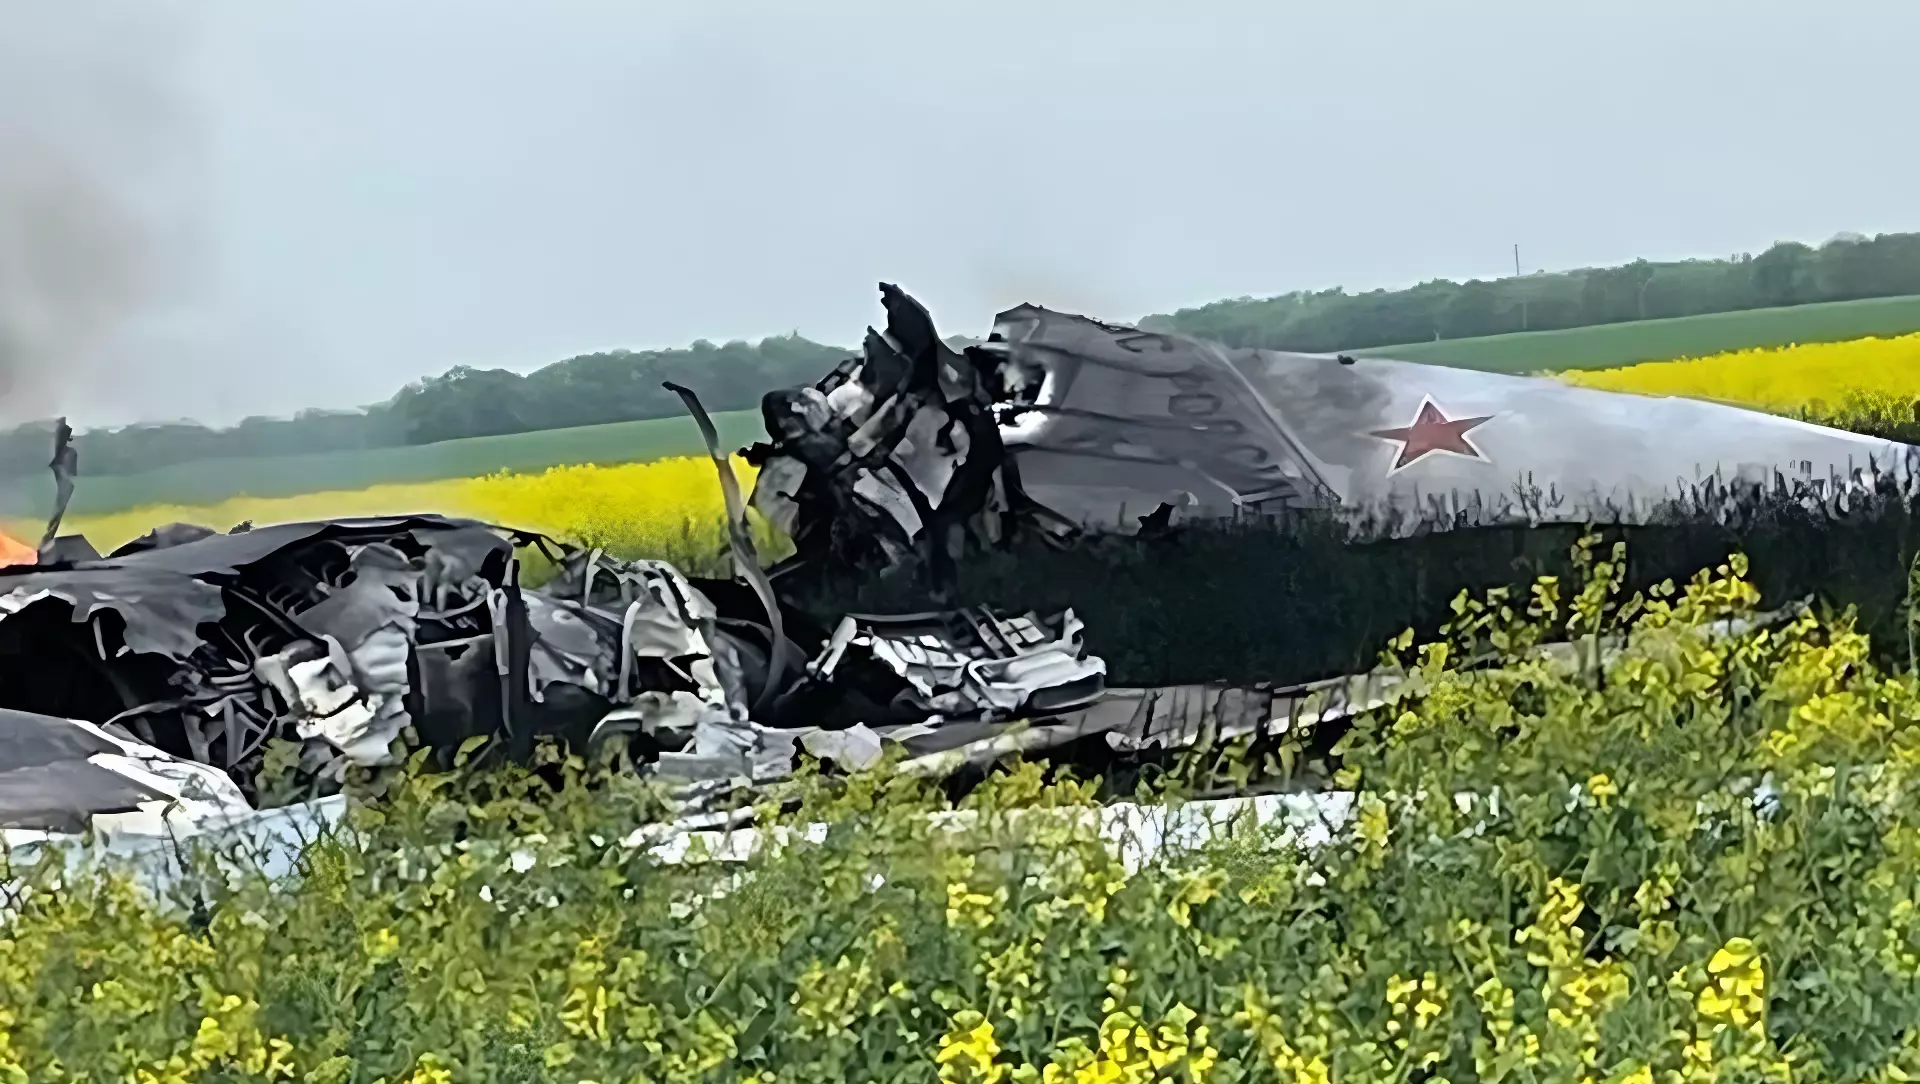 О состоянии летчиков после крушения самолета рассказал губернатор Ставрополья